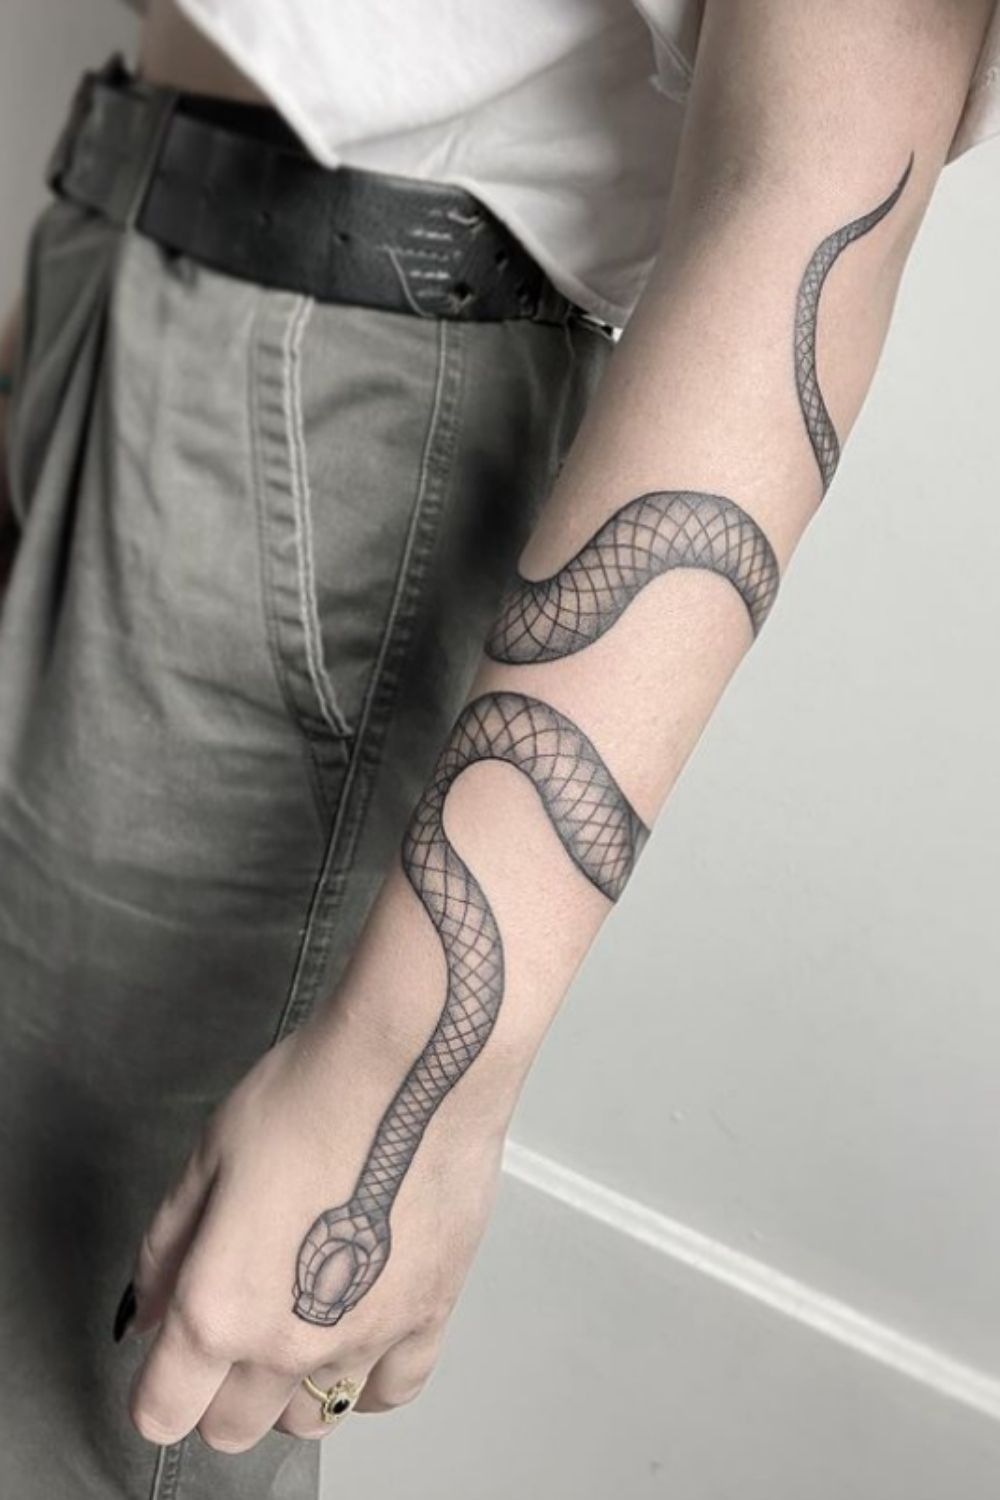 Snake tattoo | 55 Inspiring Snake Tattoos for Both Men and Women